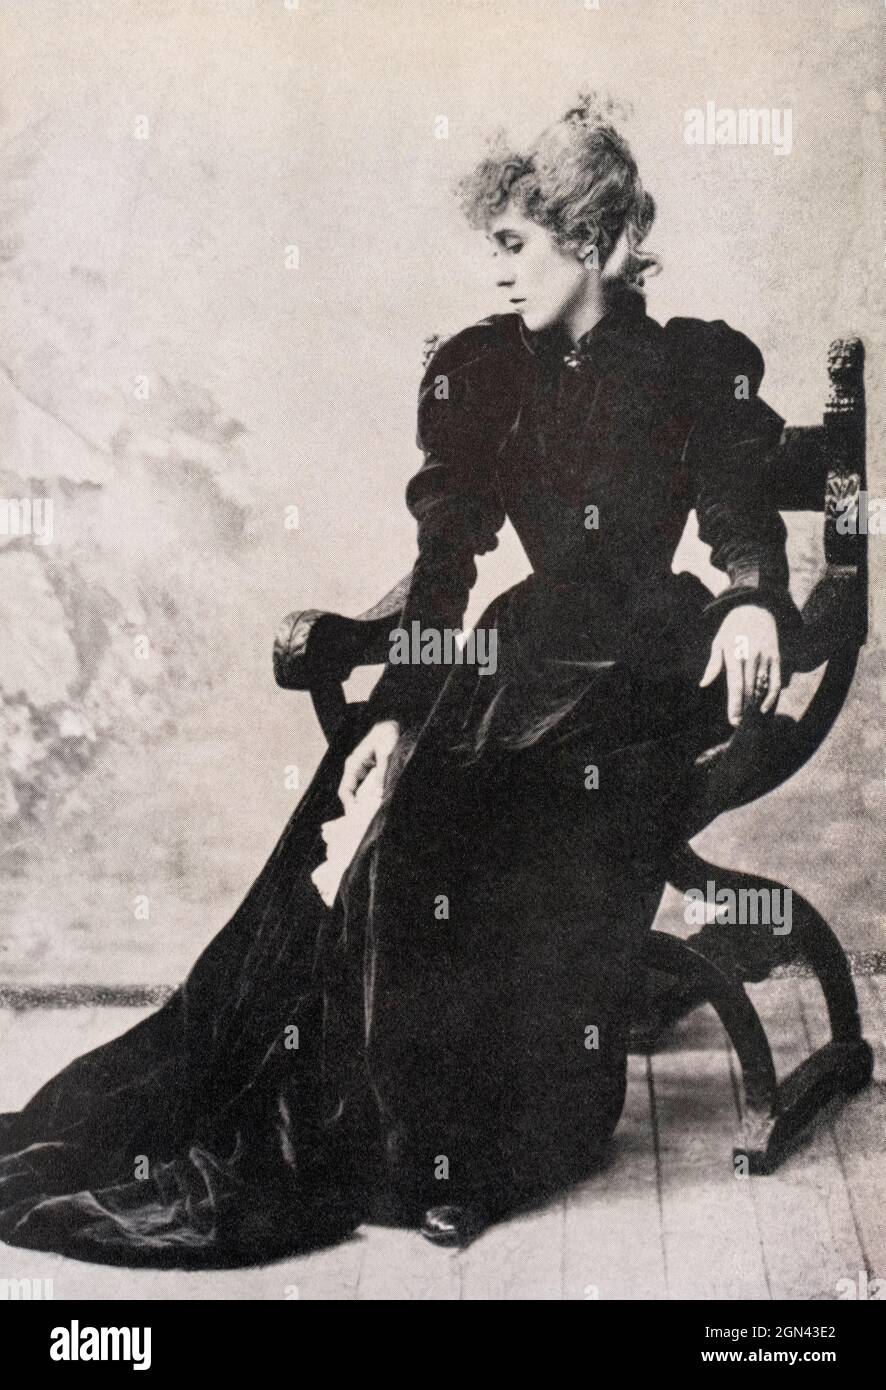 Porträt der französischen Can-Can-Tänzerin Jane Avril, 1868-1943. Henri Toulouse-Lautrec, 1864 - 1901, französischer Künstler des Post-Impressionismus, zeigte den Nachtclub-Star-Tänzer auf mehreren seiner Plakate und Gemälde. Stockfoto